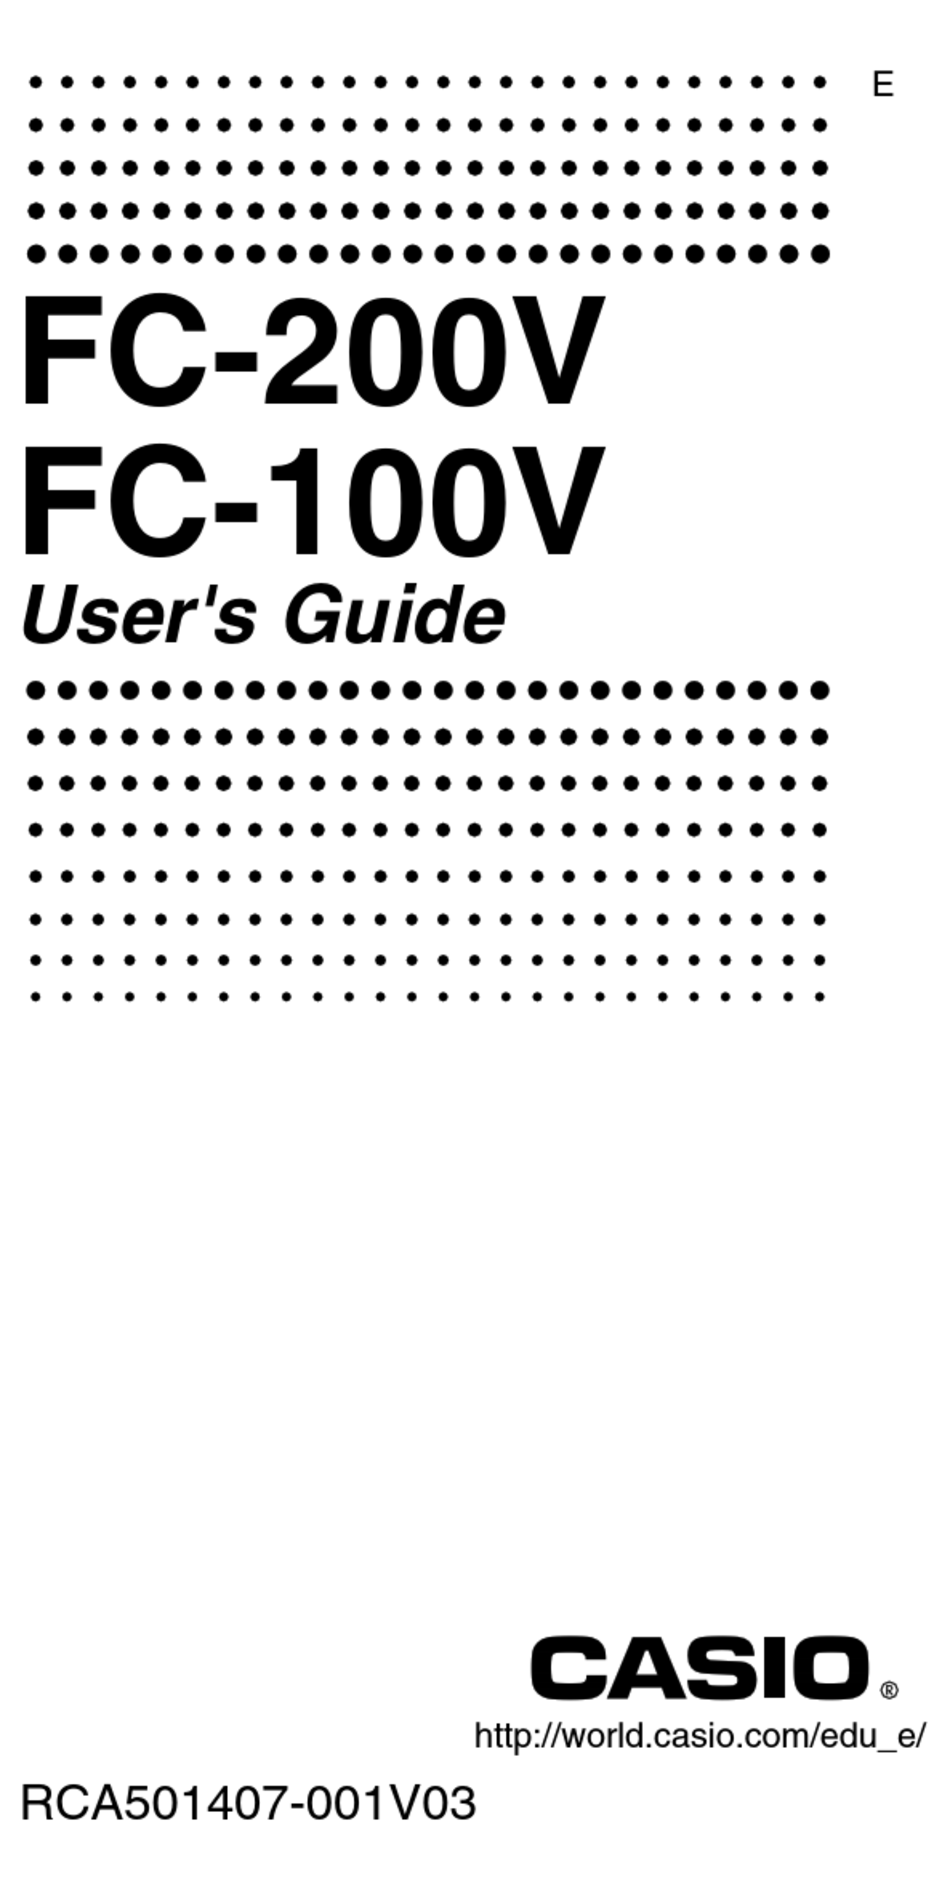 casio fc-200v emulator mac